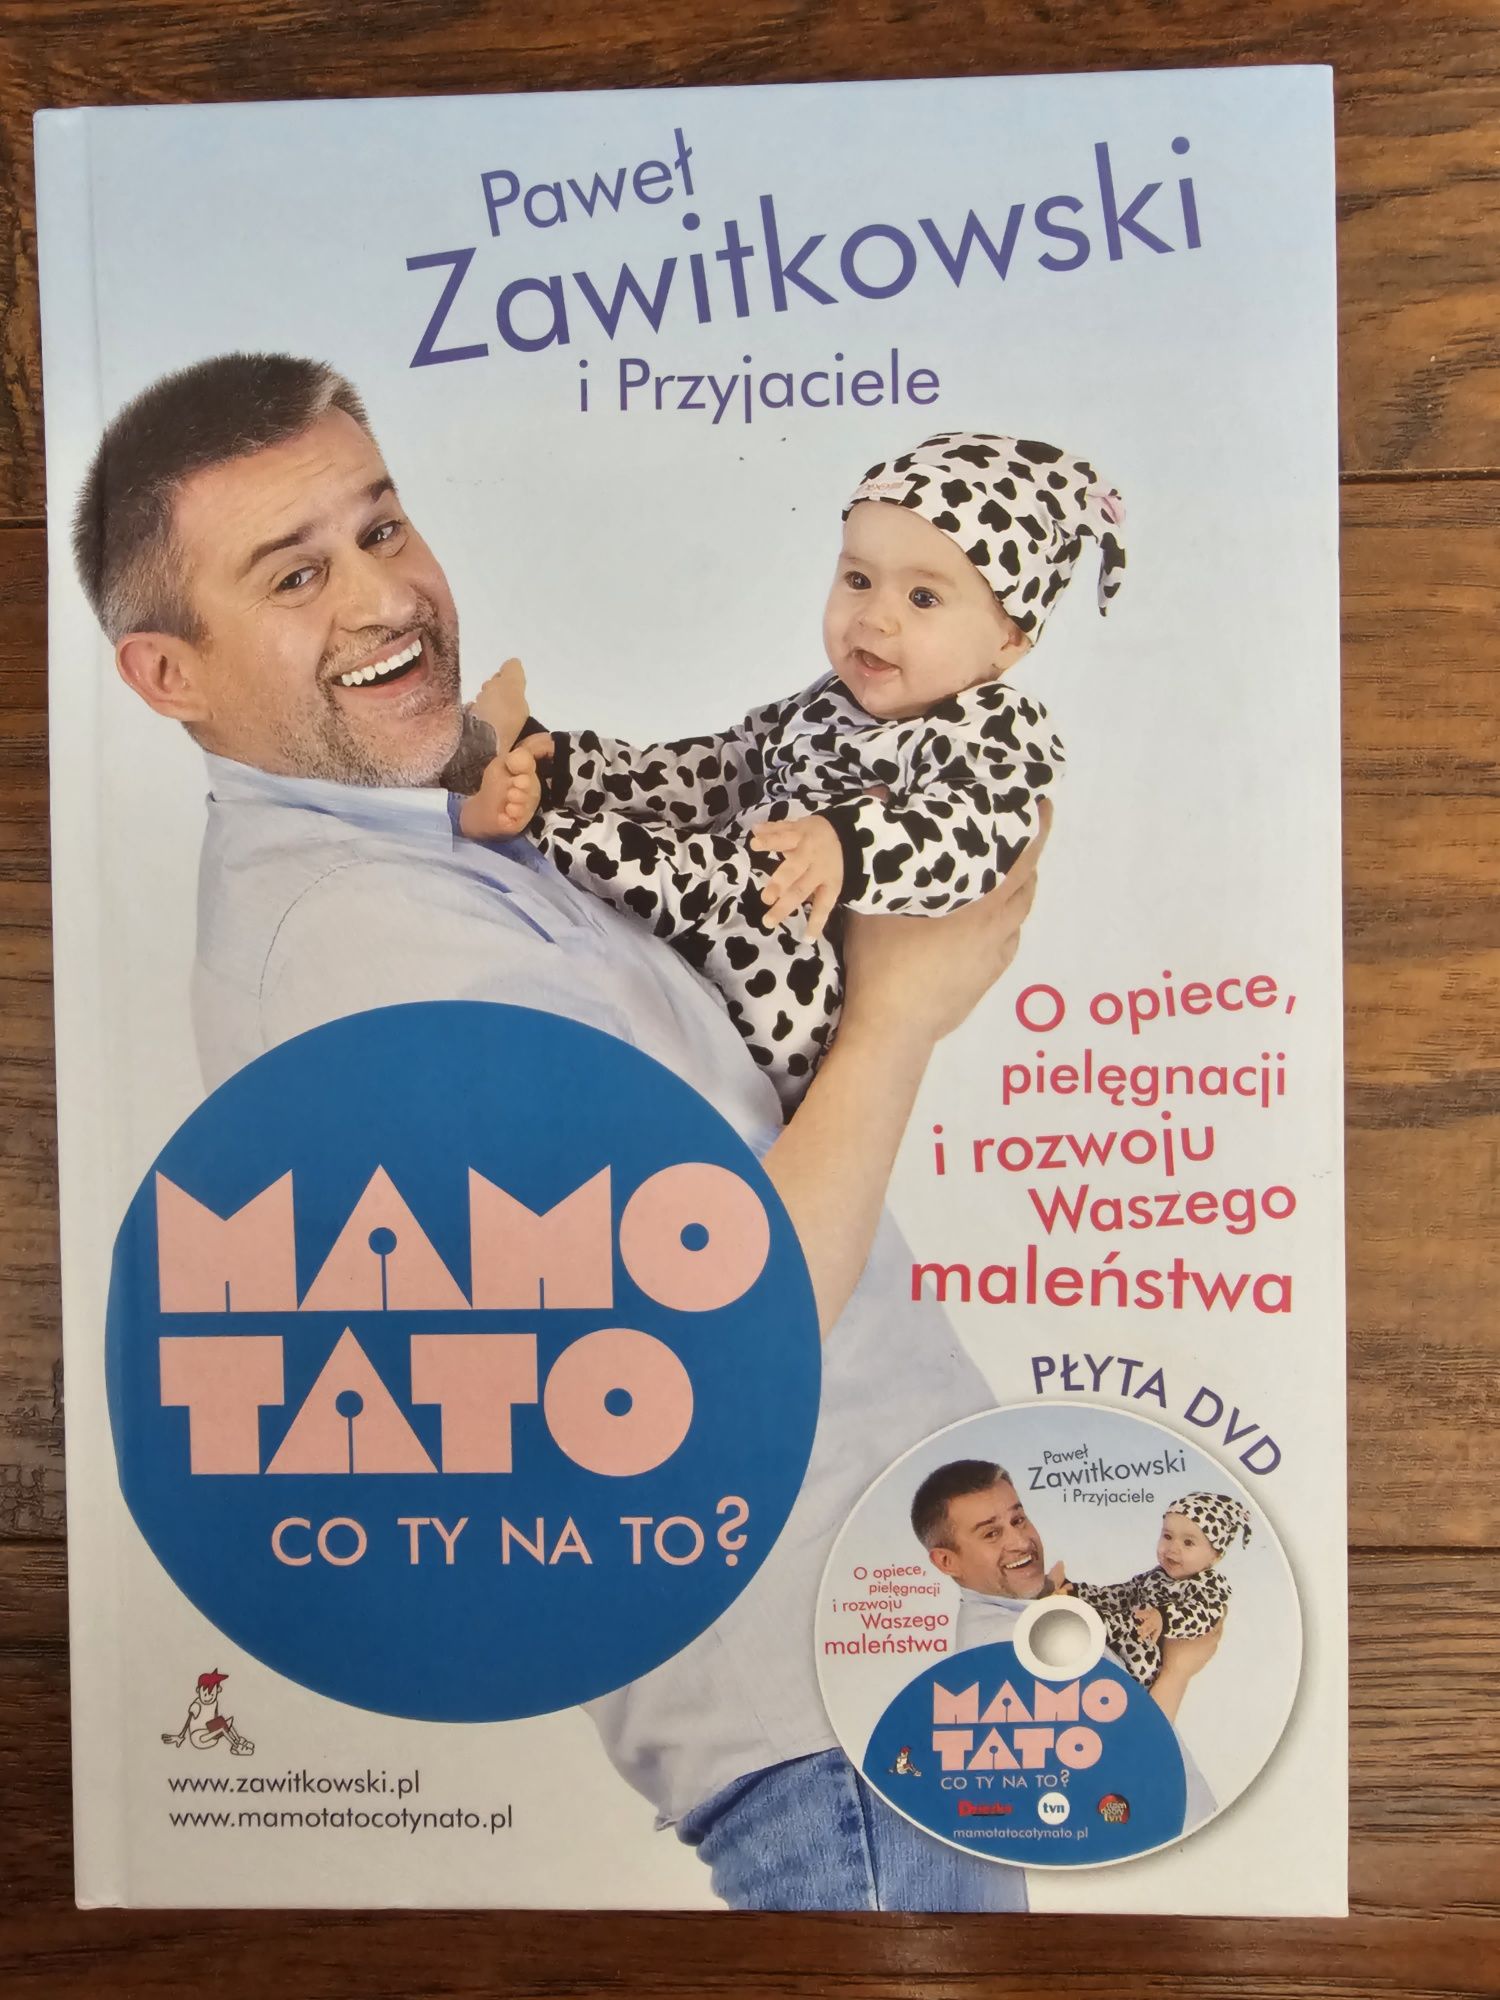 Paweł Zawitkowski i przyjaciele "Mamo, tato co ty na to?"